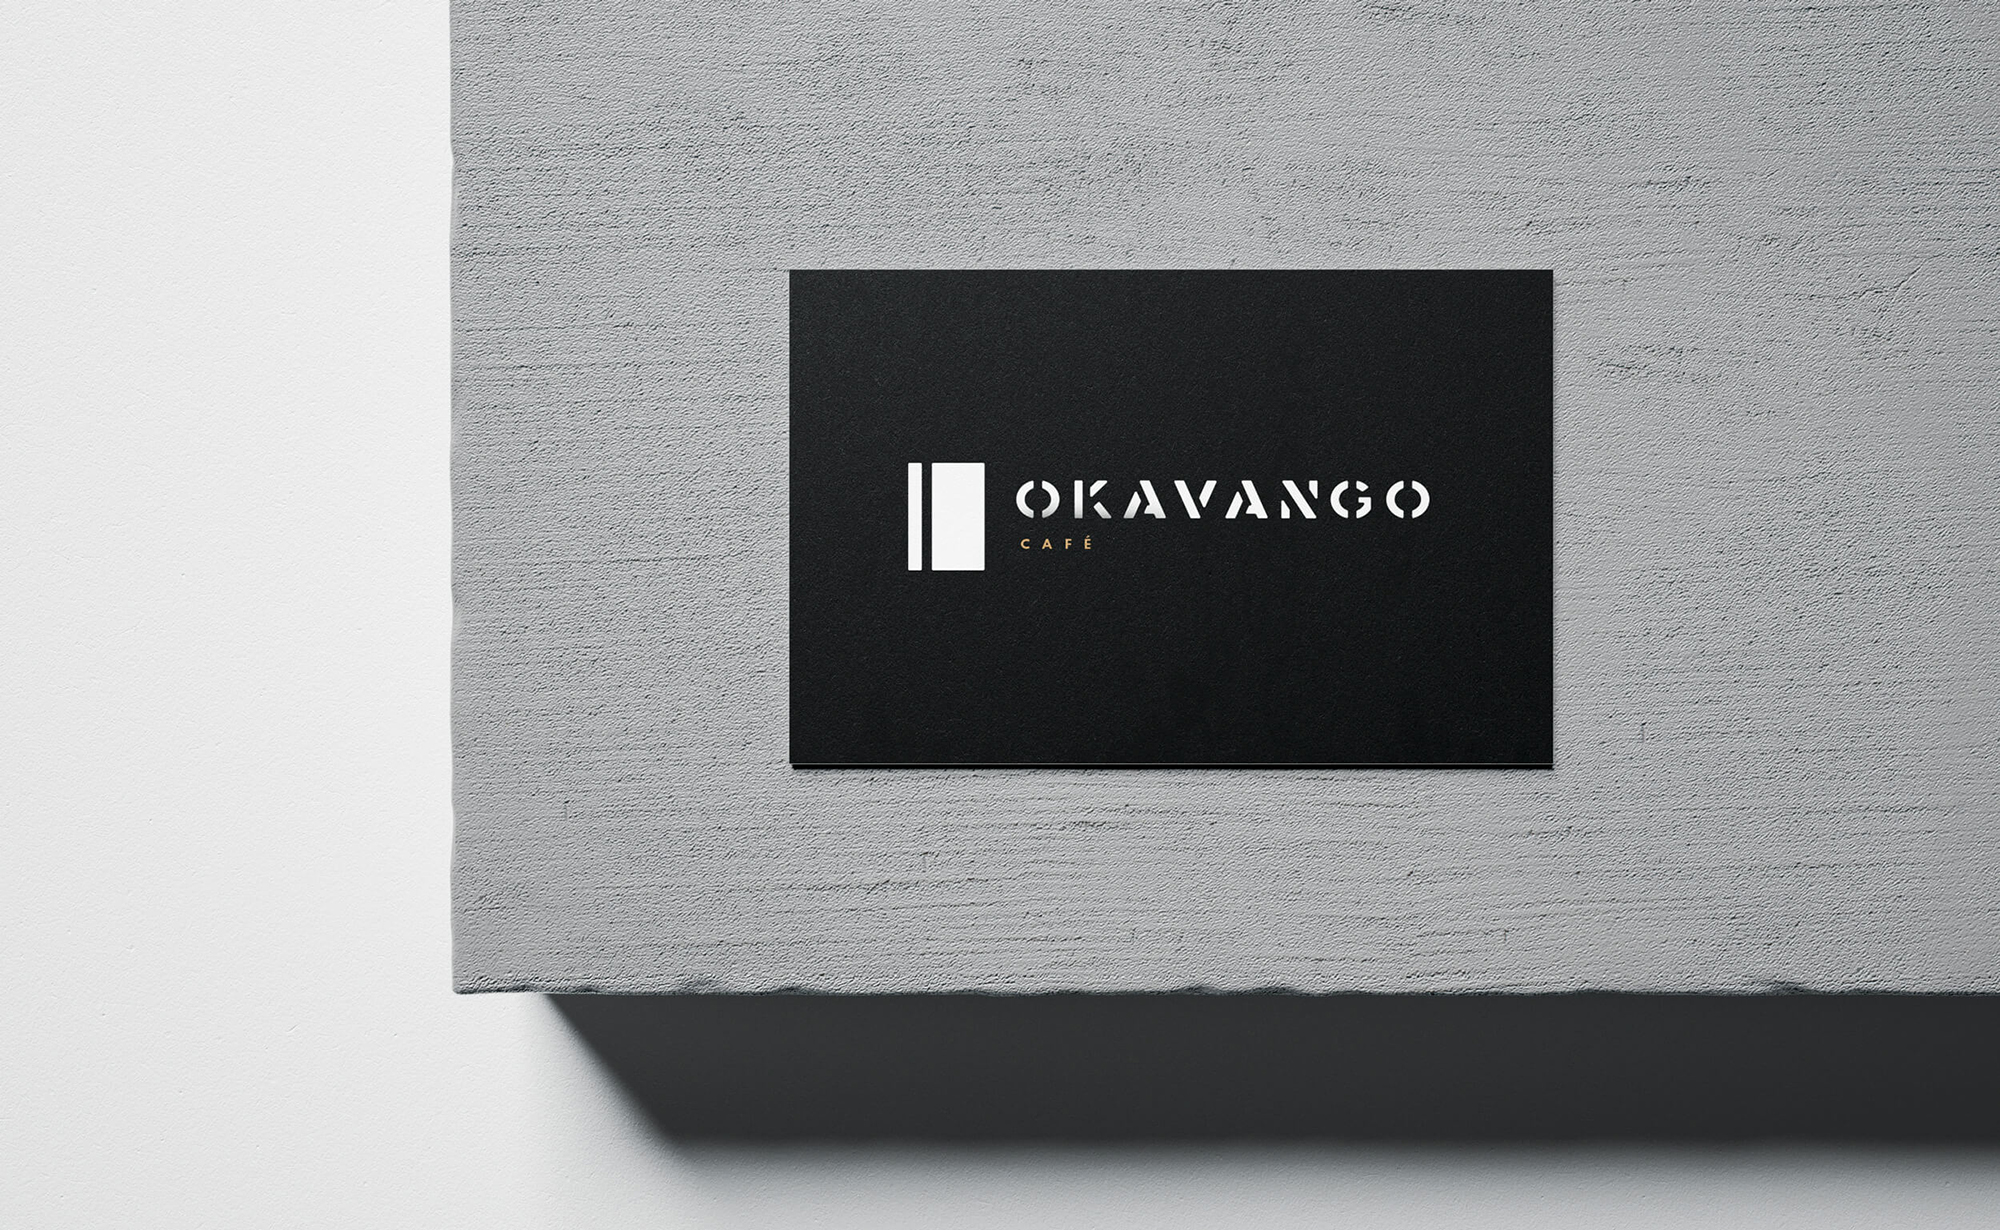 Diseño y desarrollo de identidad visual corporativa para Okavango Café. Tarjeta de visita.